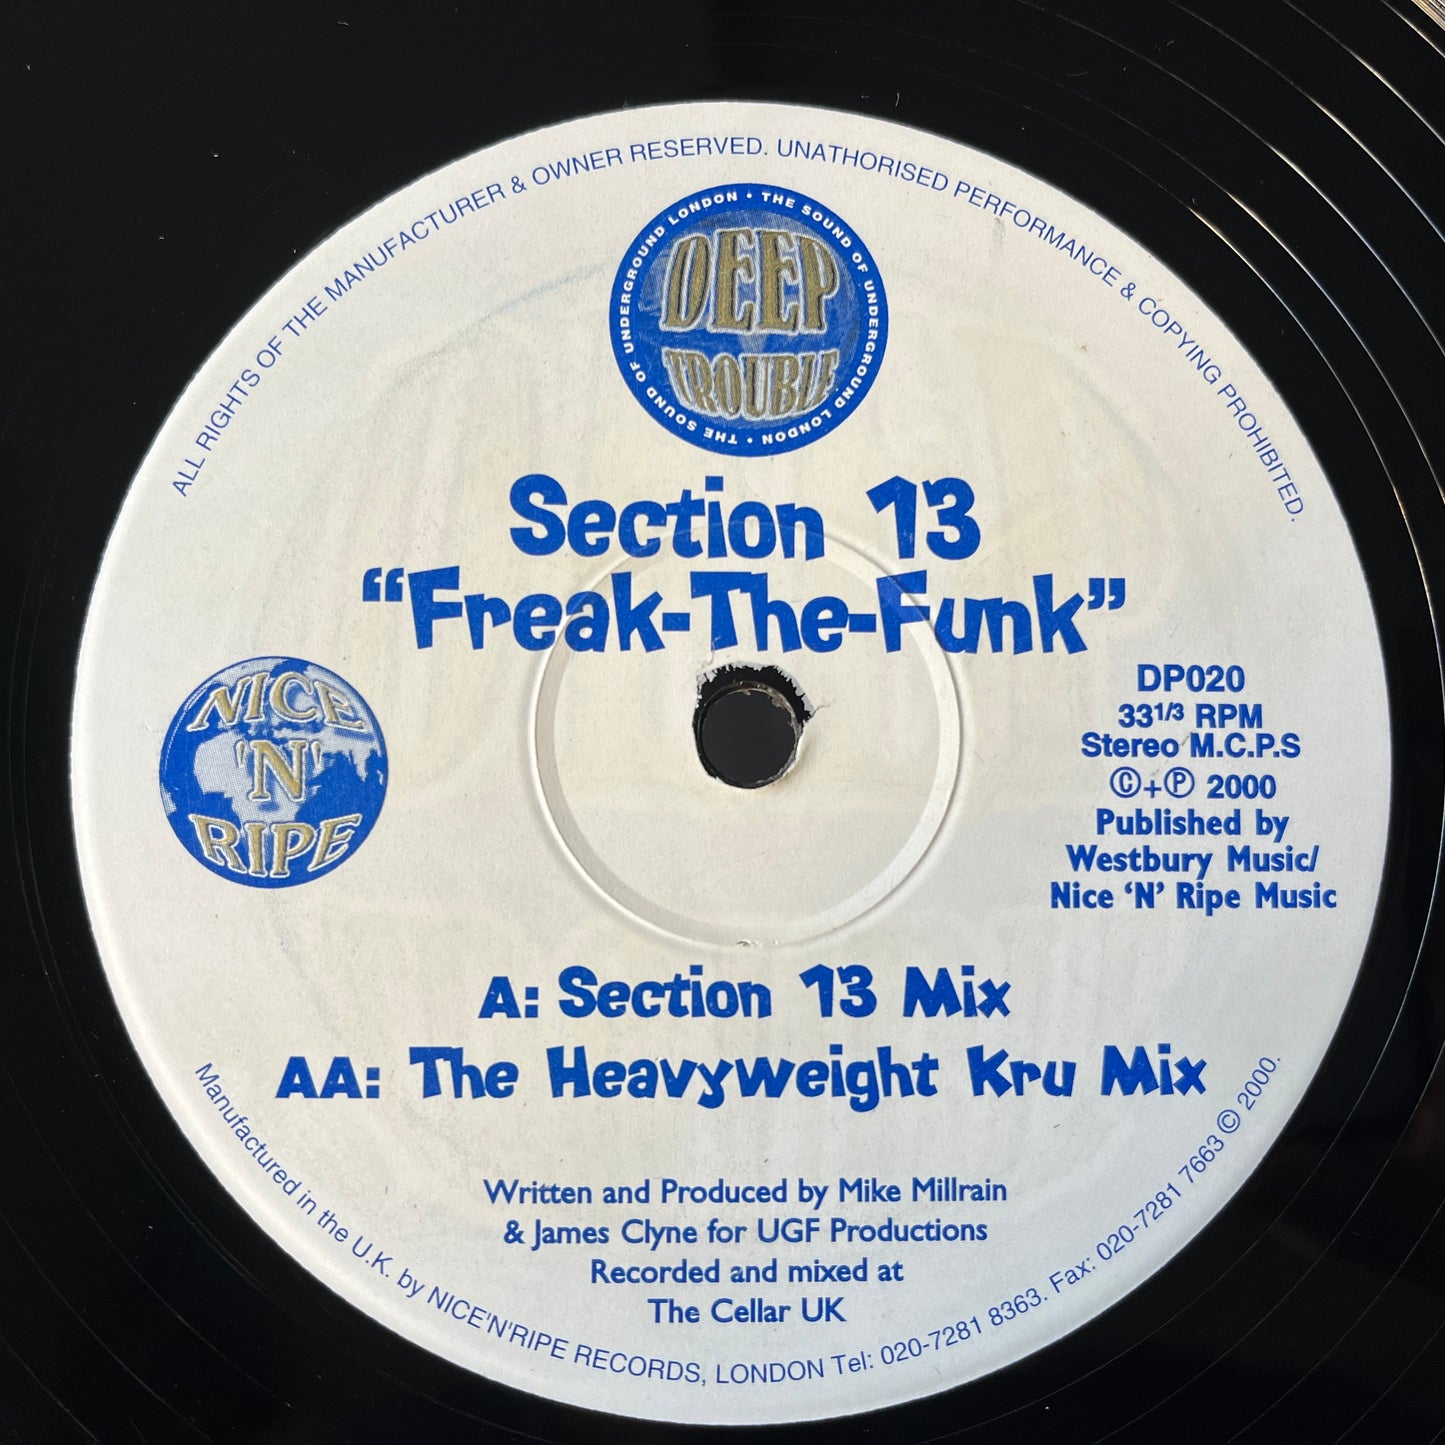 第 13 节 – Freak-The-Funk